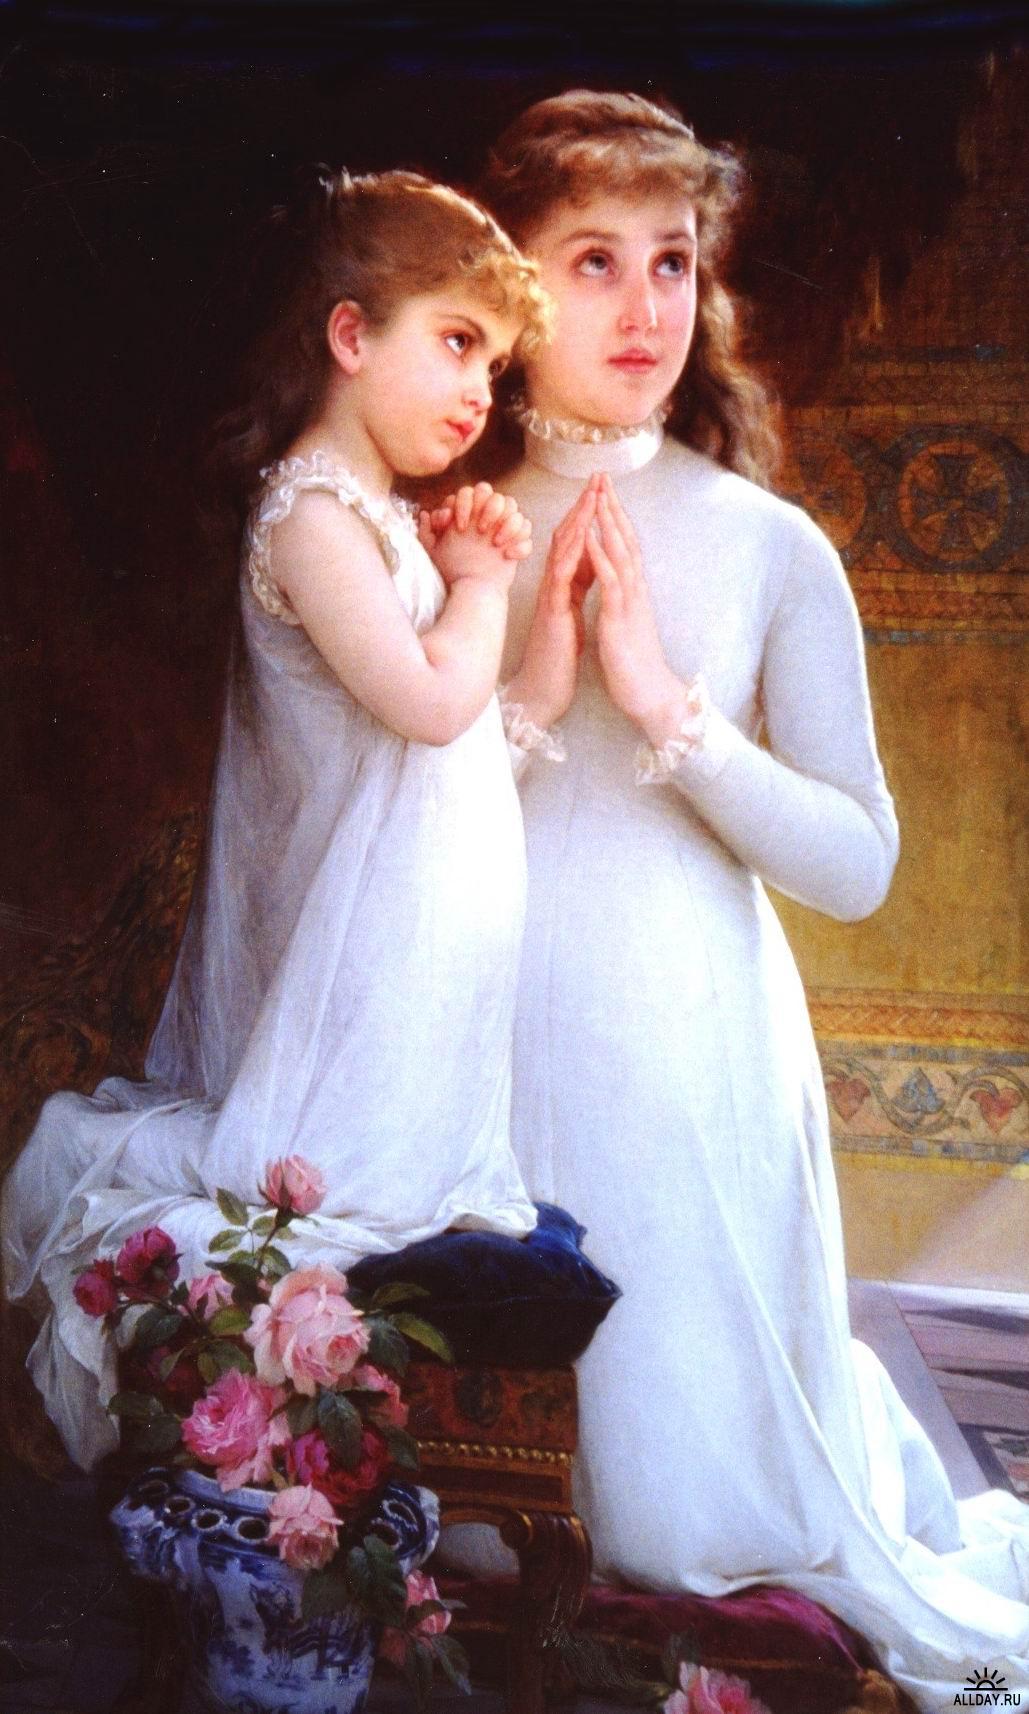 Munier, Emile - Two Girls Praying - 19th century.jpg